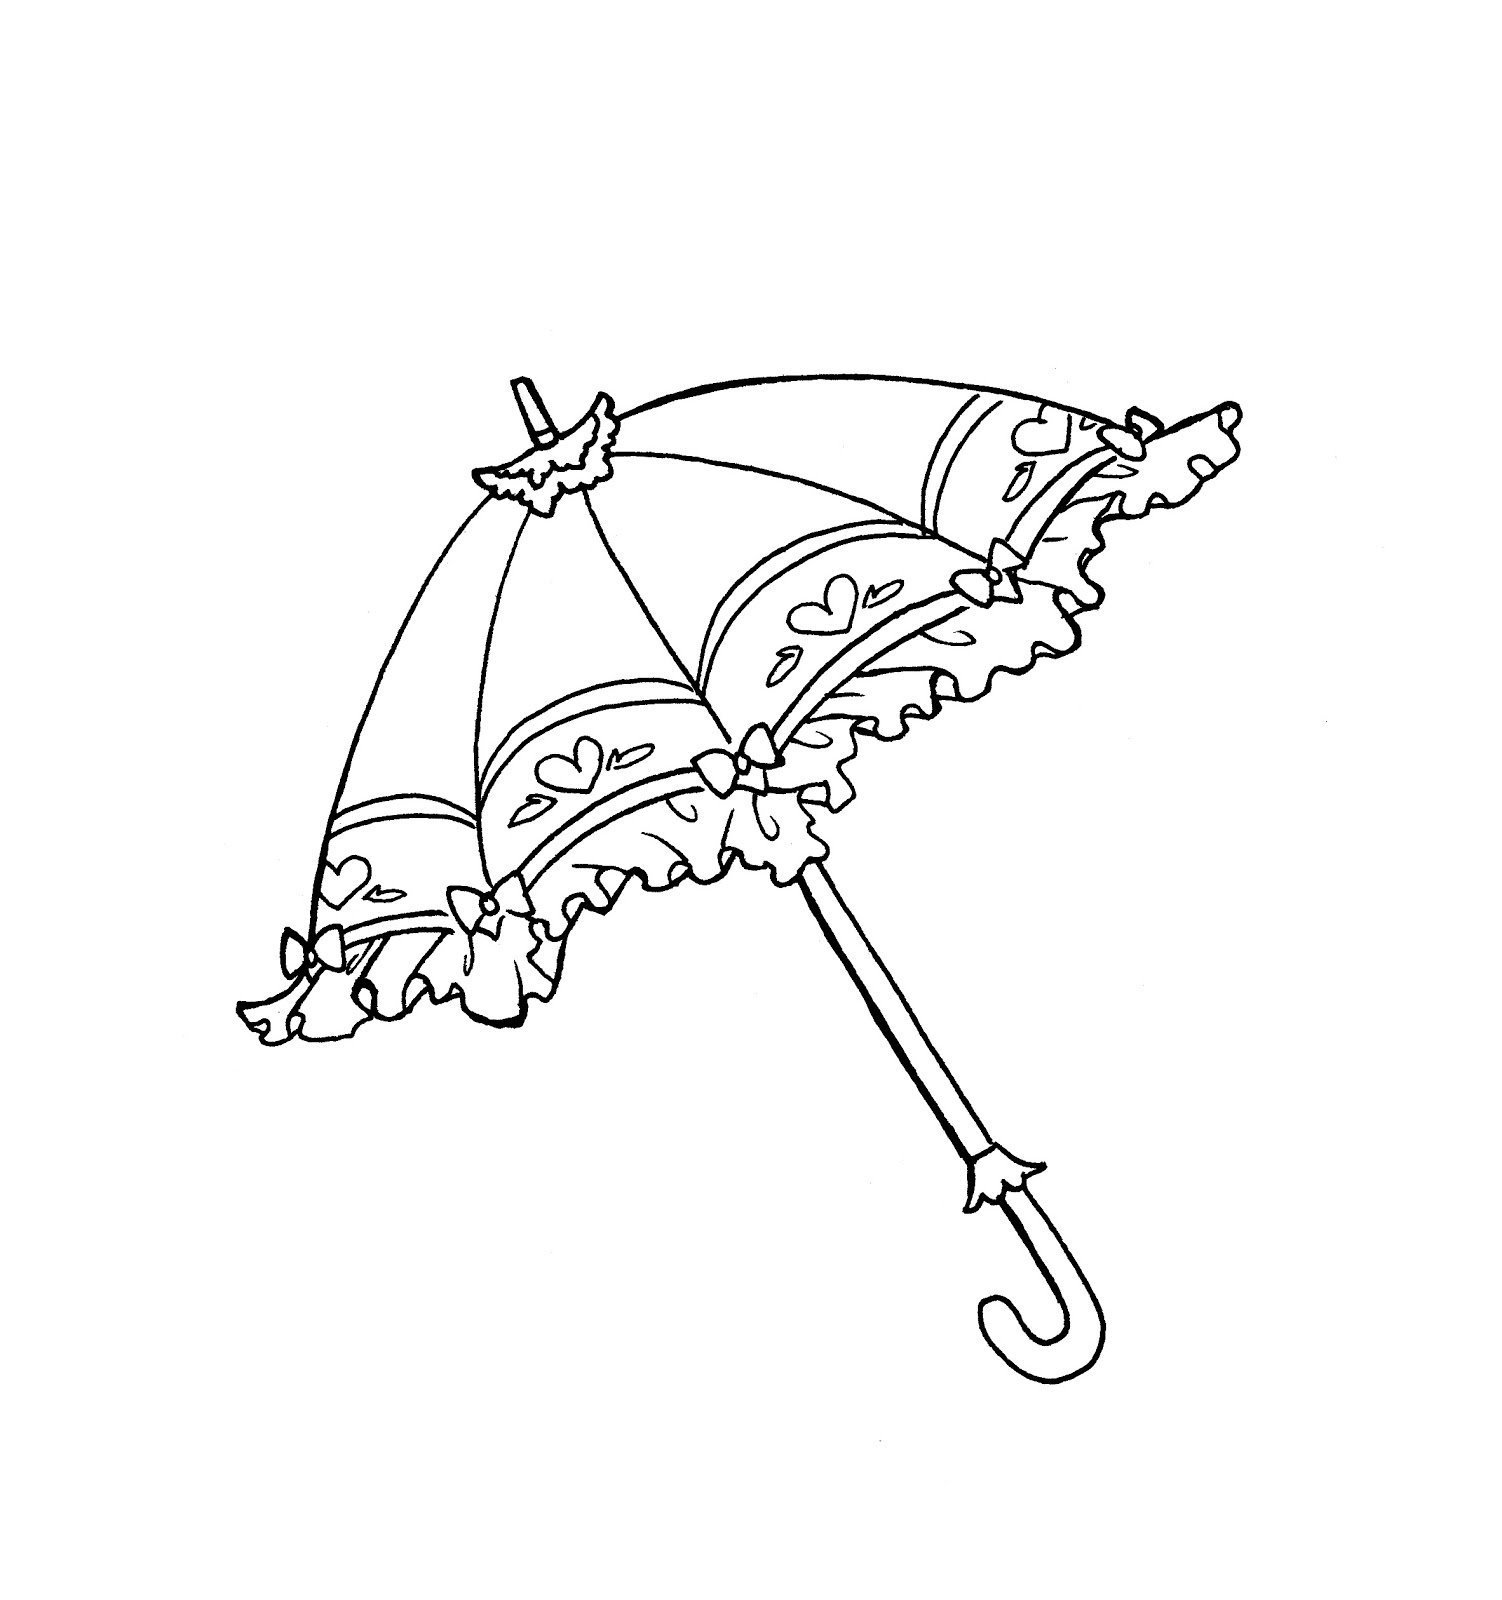 Распечатать зонтик. Зонт раскраска. Зонт трафарет. Раскраска зонтик. Зонтик раскраска для детей.